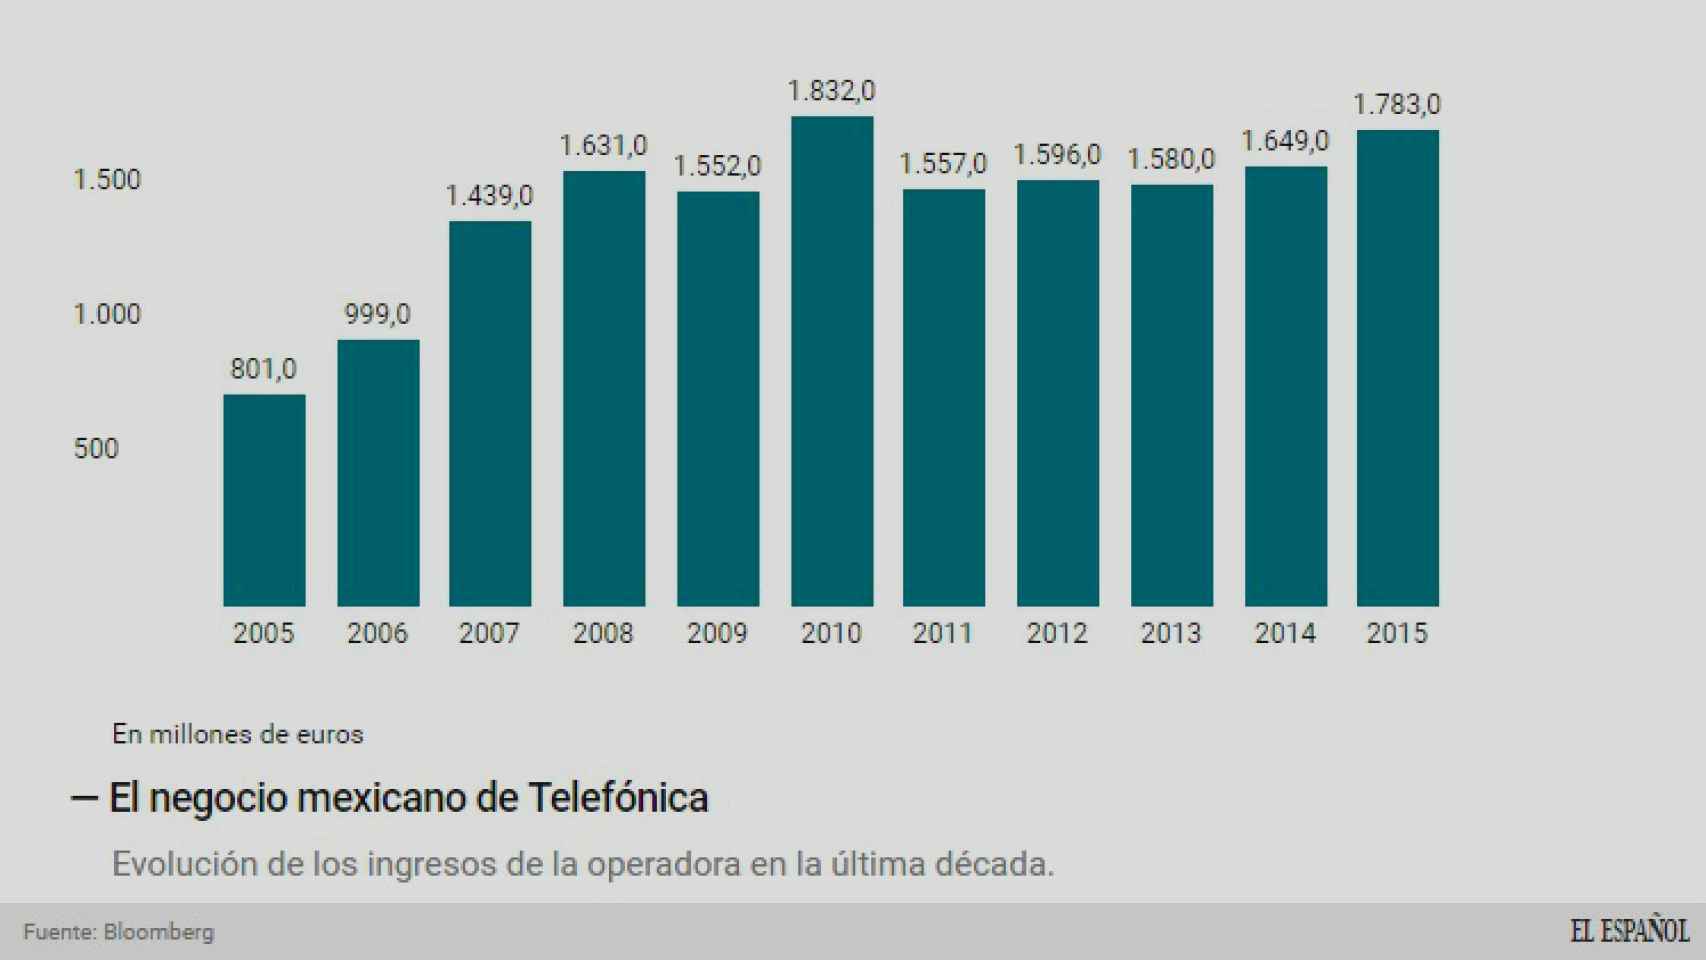 El negocio mexicano de Telefónica.